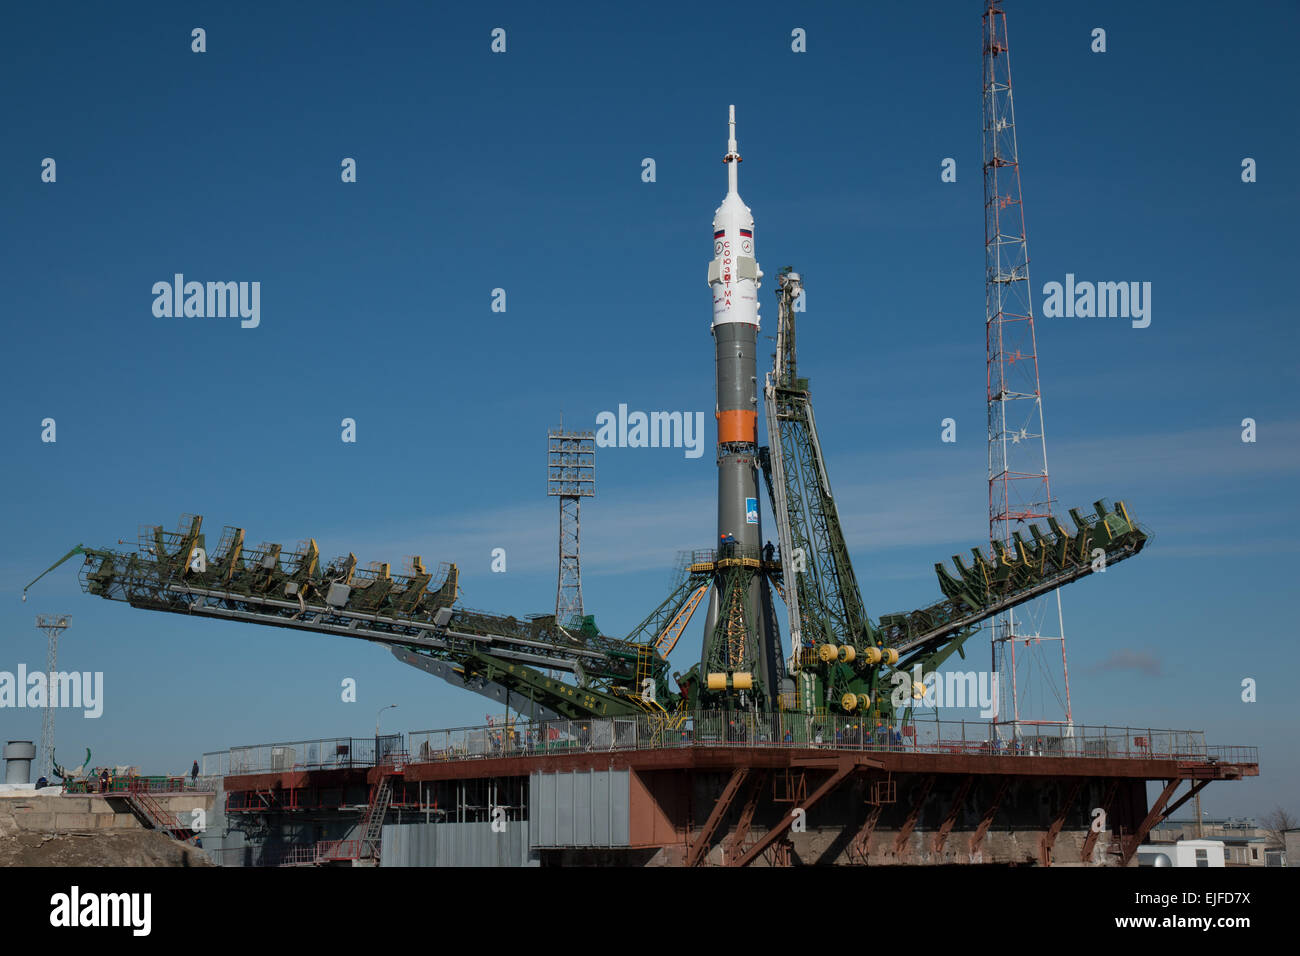 Das Raumschiff Sojus TMA - 16M ist mit dem Zug auf der Startrampe und die Gantry angehoben um die Rakete auf dem Kosmodrom Baikonur 25. März 2015 in Kasachstan ausgerollt. Start der Sojus Rakete ist für den 28. März geplant und führt Expedition 43 Besatzung der internationalen Raumstation ISS. Stockfoto